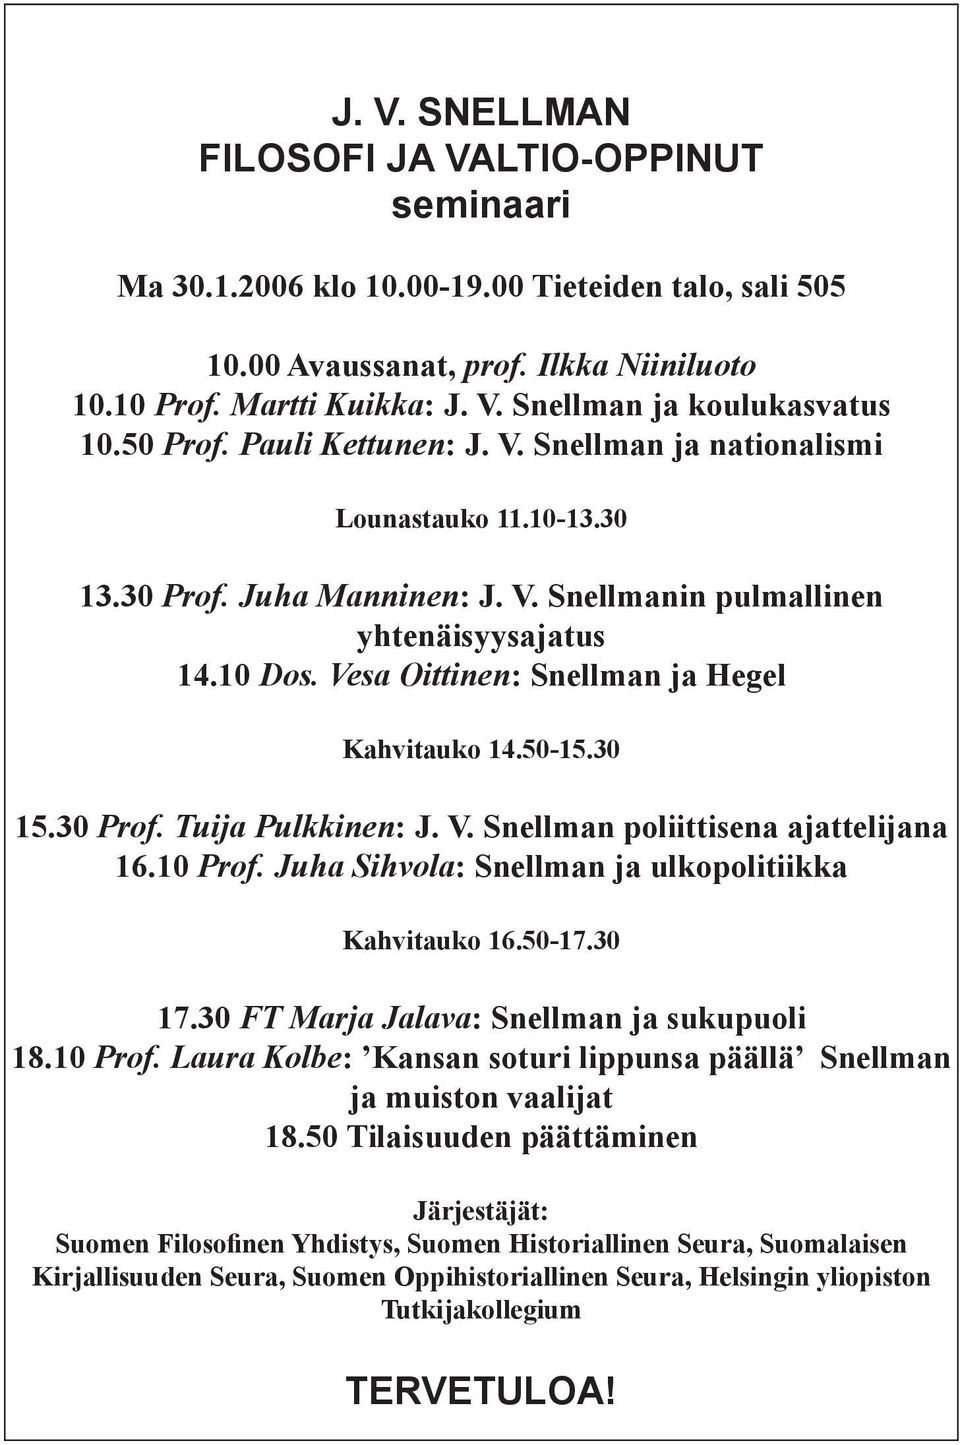 Vesa Oittinen: Snellman ja Hegel Kahvitauko 14.50-15.30 15.30 Prof. Tuija Pulkkinen: J. V. Snellman poliittisena ajattelijana 16.10 Prof. Juha Sihvola: Snellman ja ulkopolitiikka Kahvitauko 16.50-17.